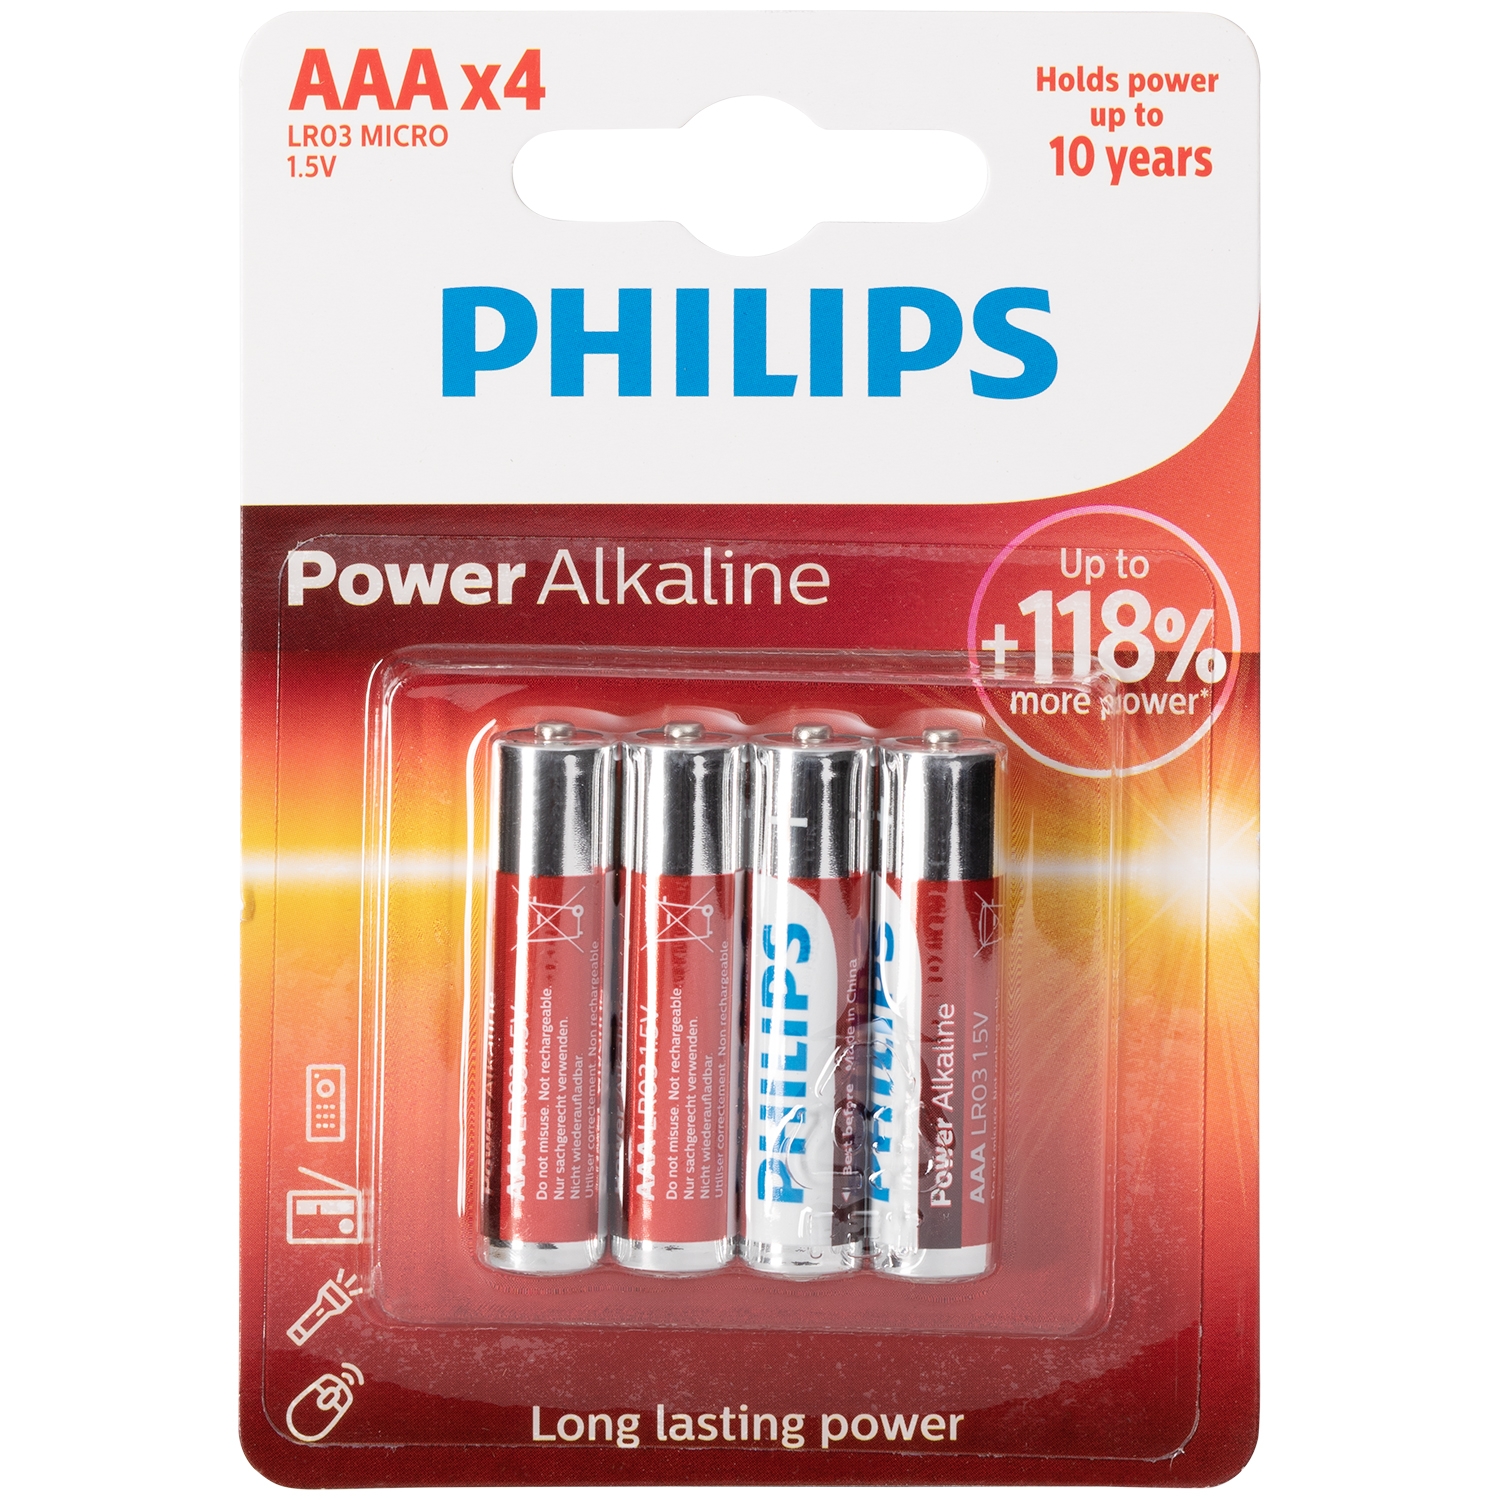 Philips Philips LR03 AAA Alkaline Batterier 4 stk. - Sølv